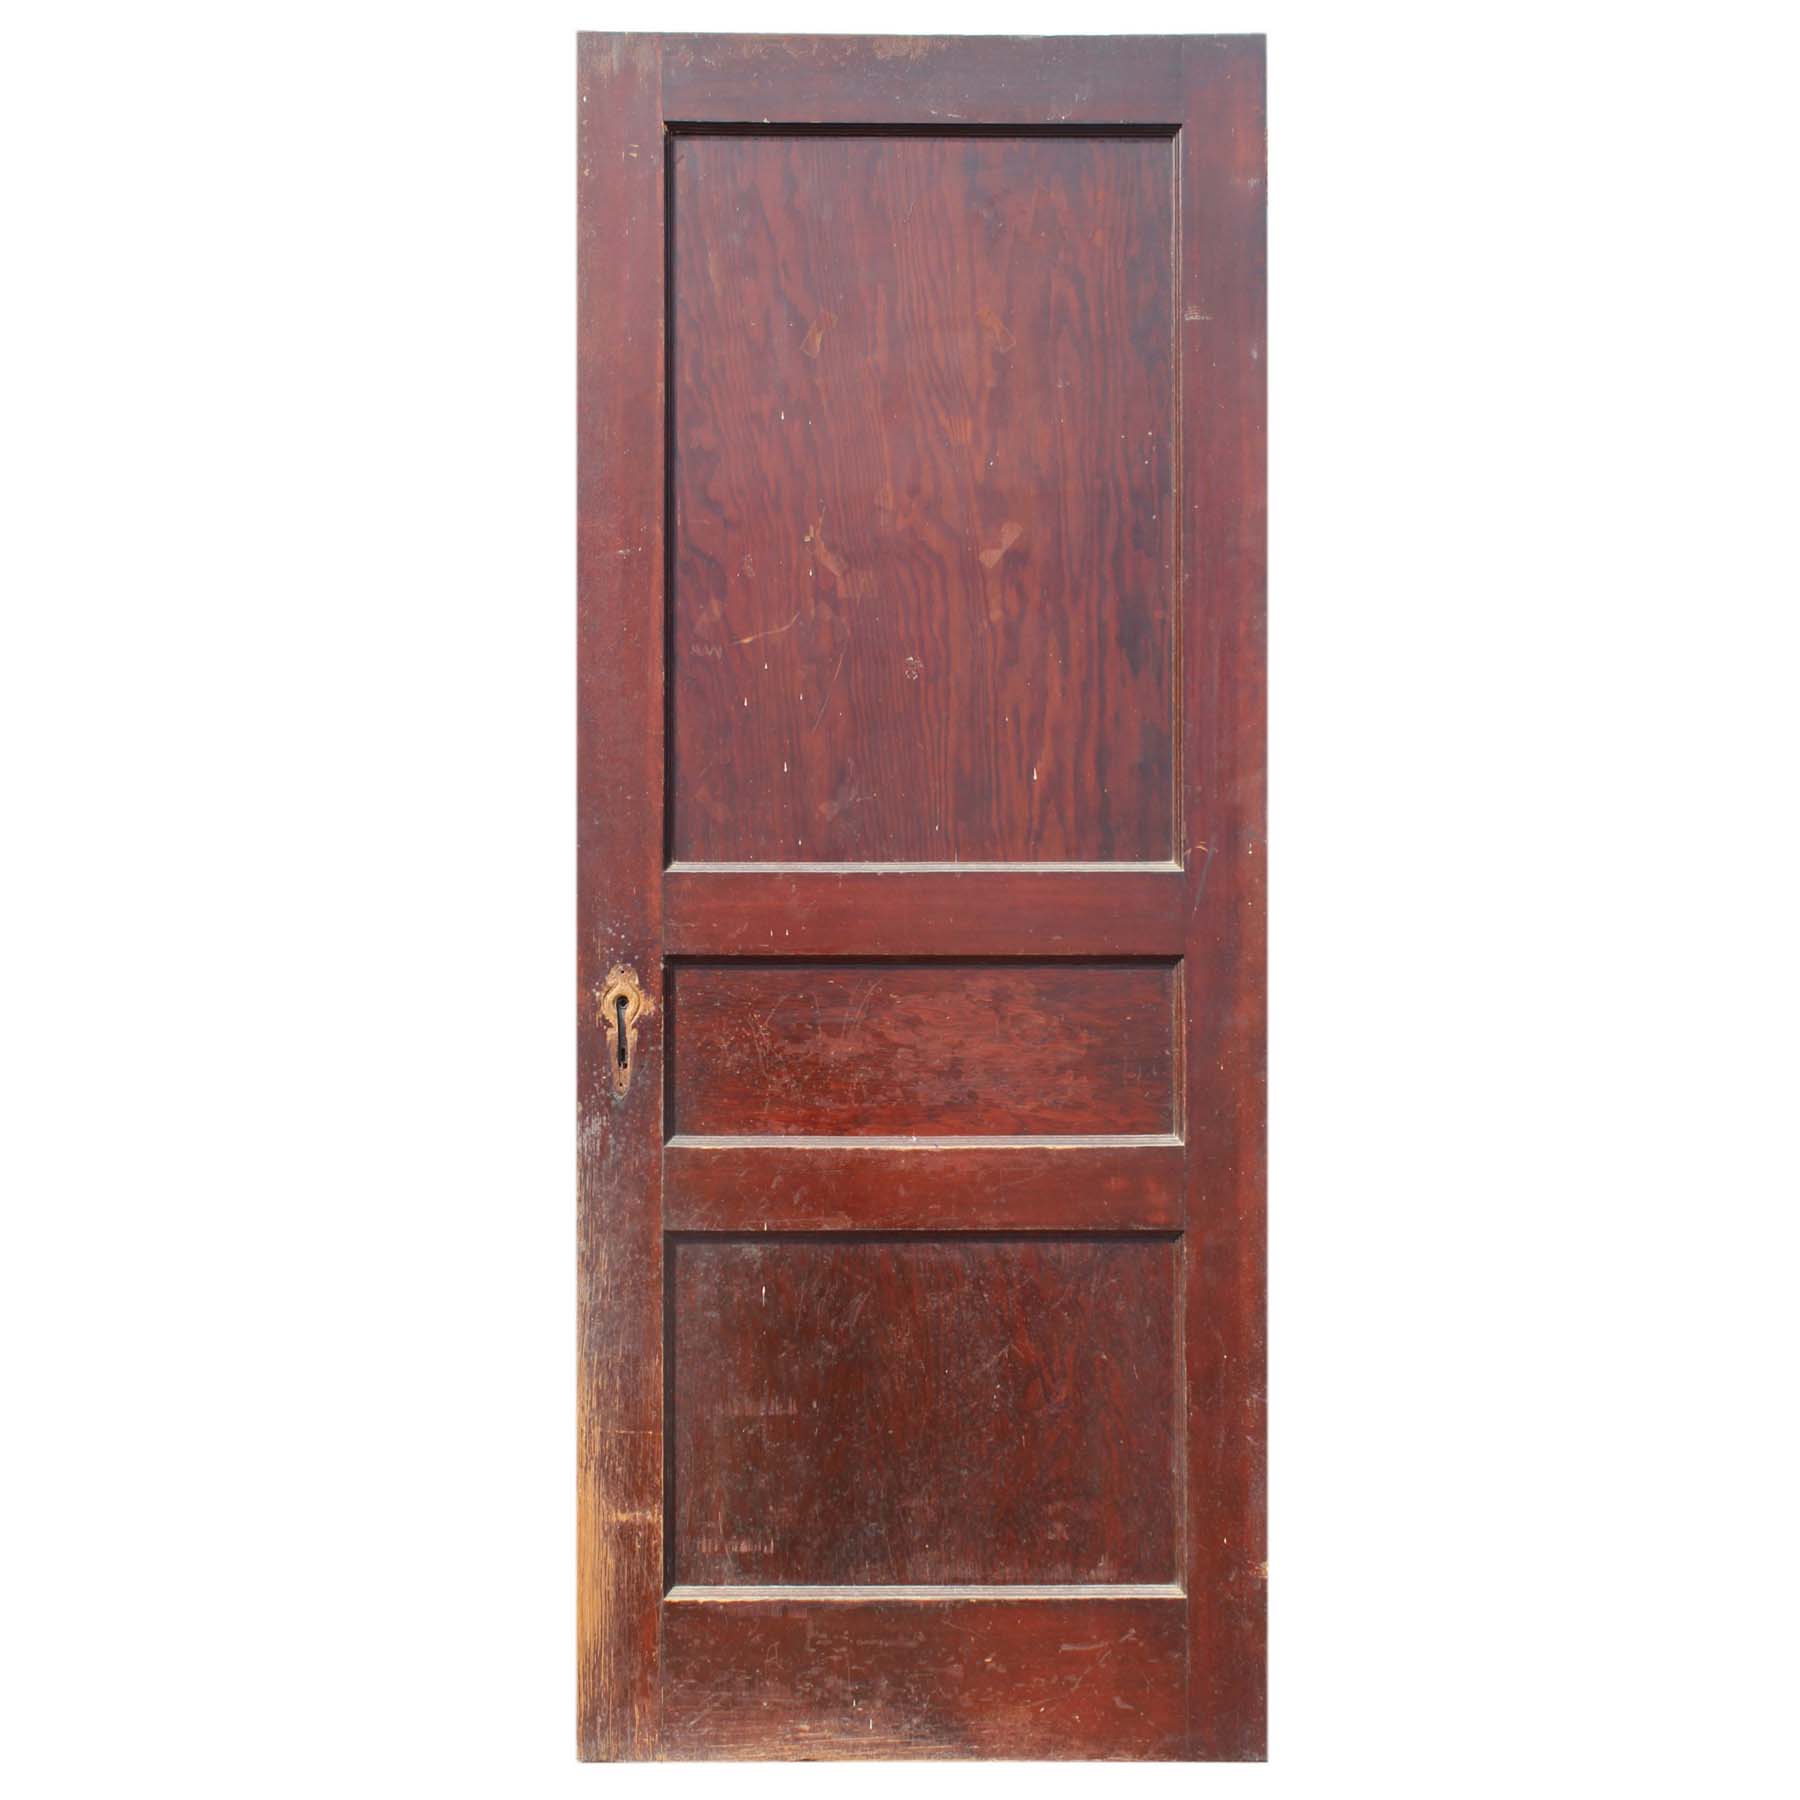 SOLD Antique 32” Three-Panel Solid Wood Door-0